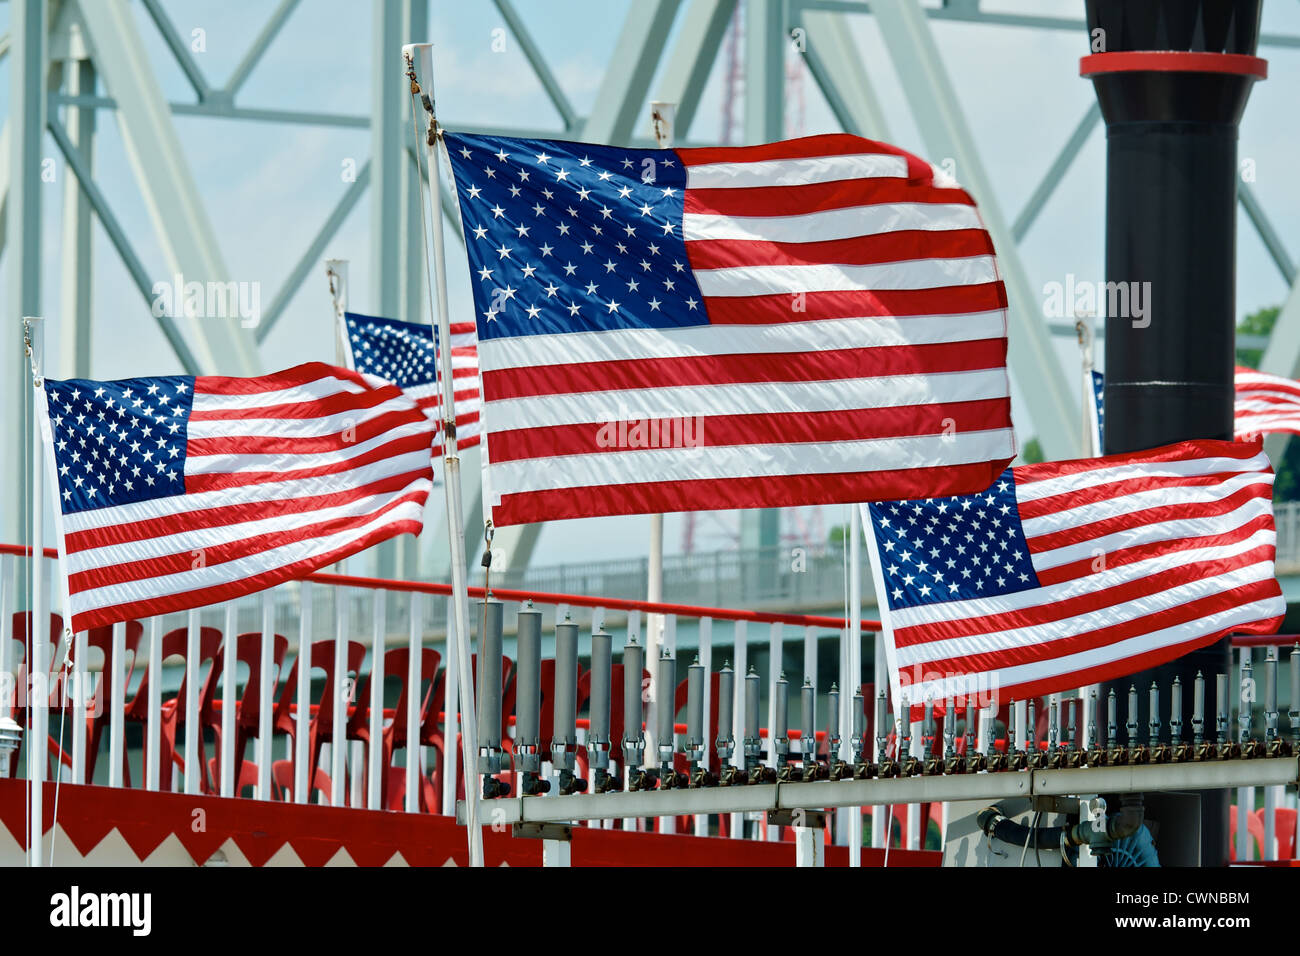 Stelle e Strisce bandiere sul ponte di una barca a remi sul Fiume Ohio a Cincinnati, Ohio / Covington, Kentucky Foto Stock